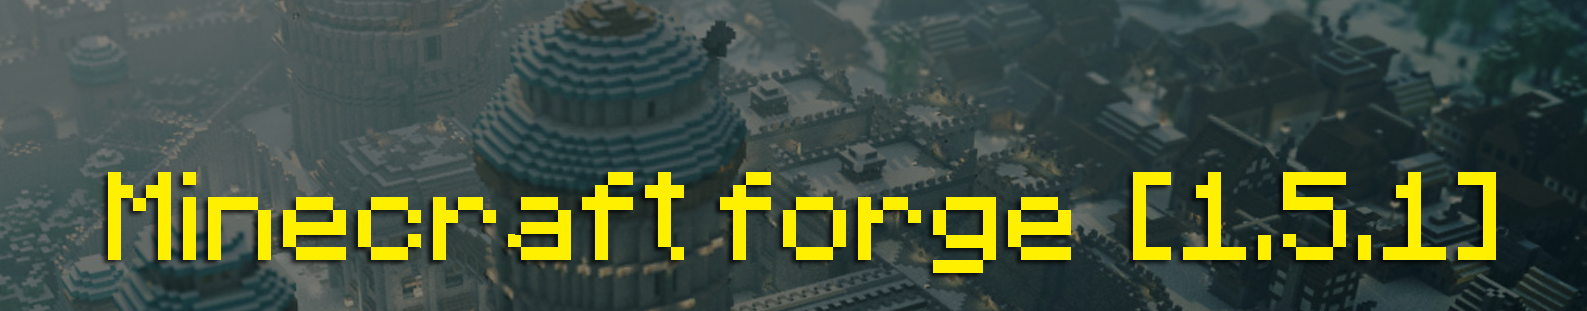 Forge для Minecraft 1.5.1 скачать